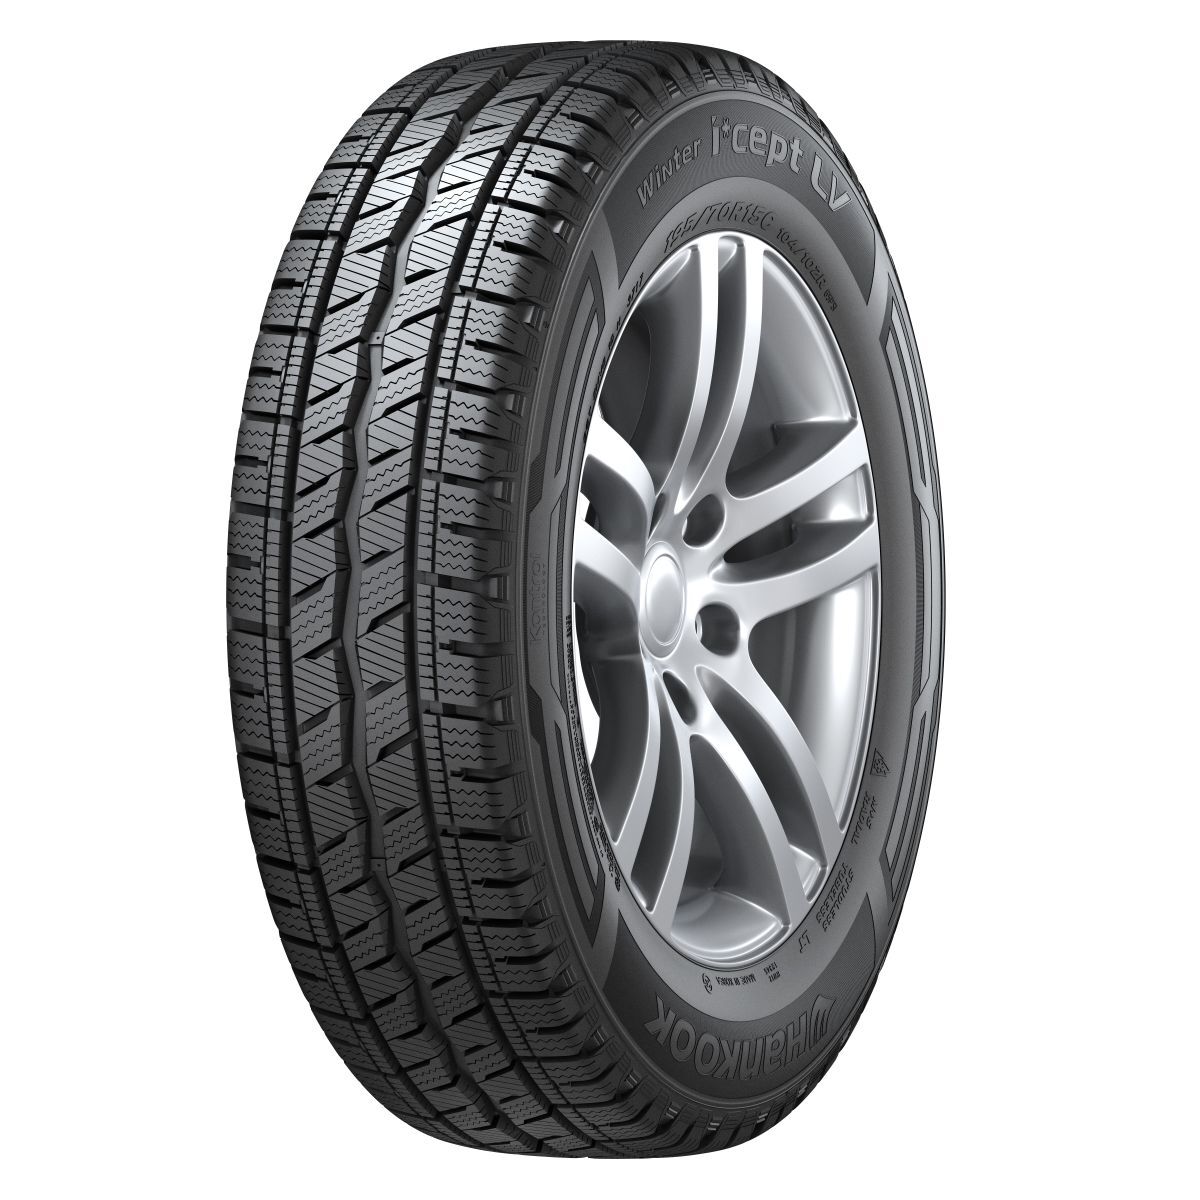 Neumáticos de invierno HANKOOK Winter I*cept LV RW12 225/70R15C, 112/110R TL